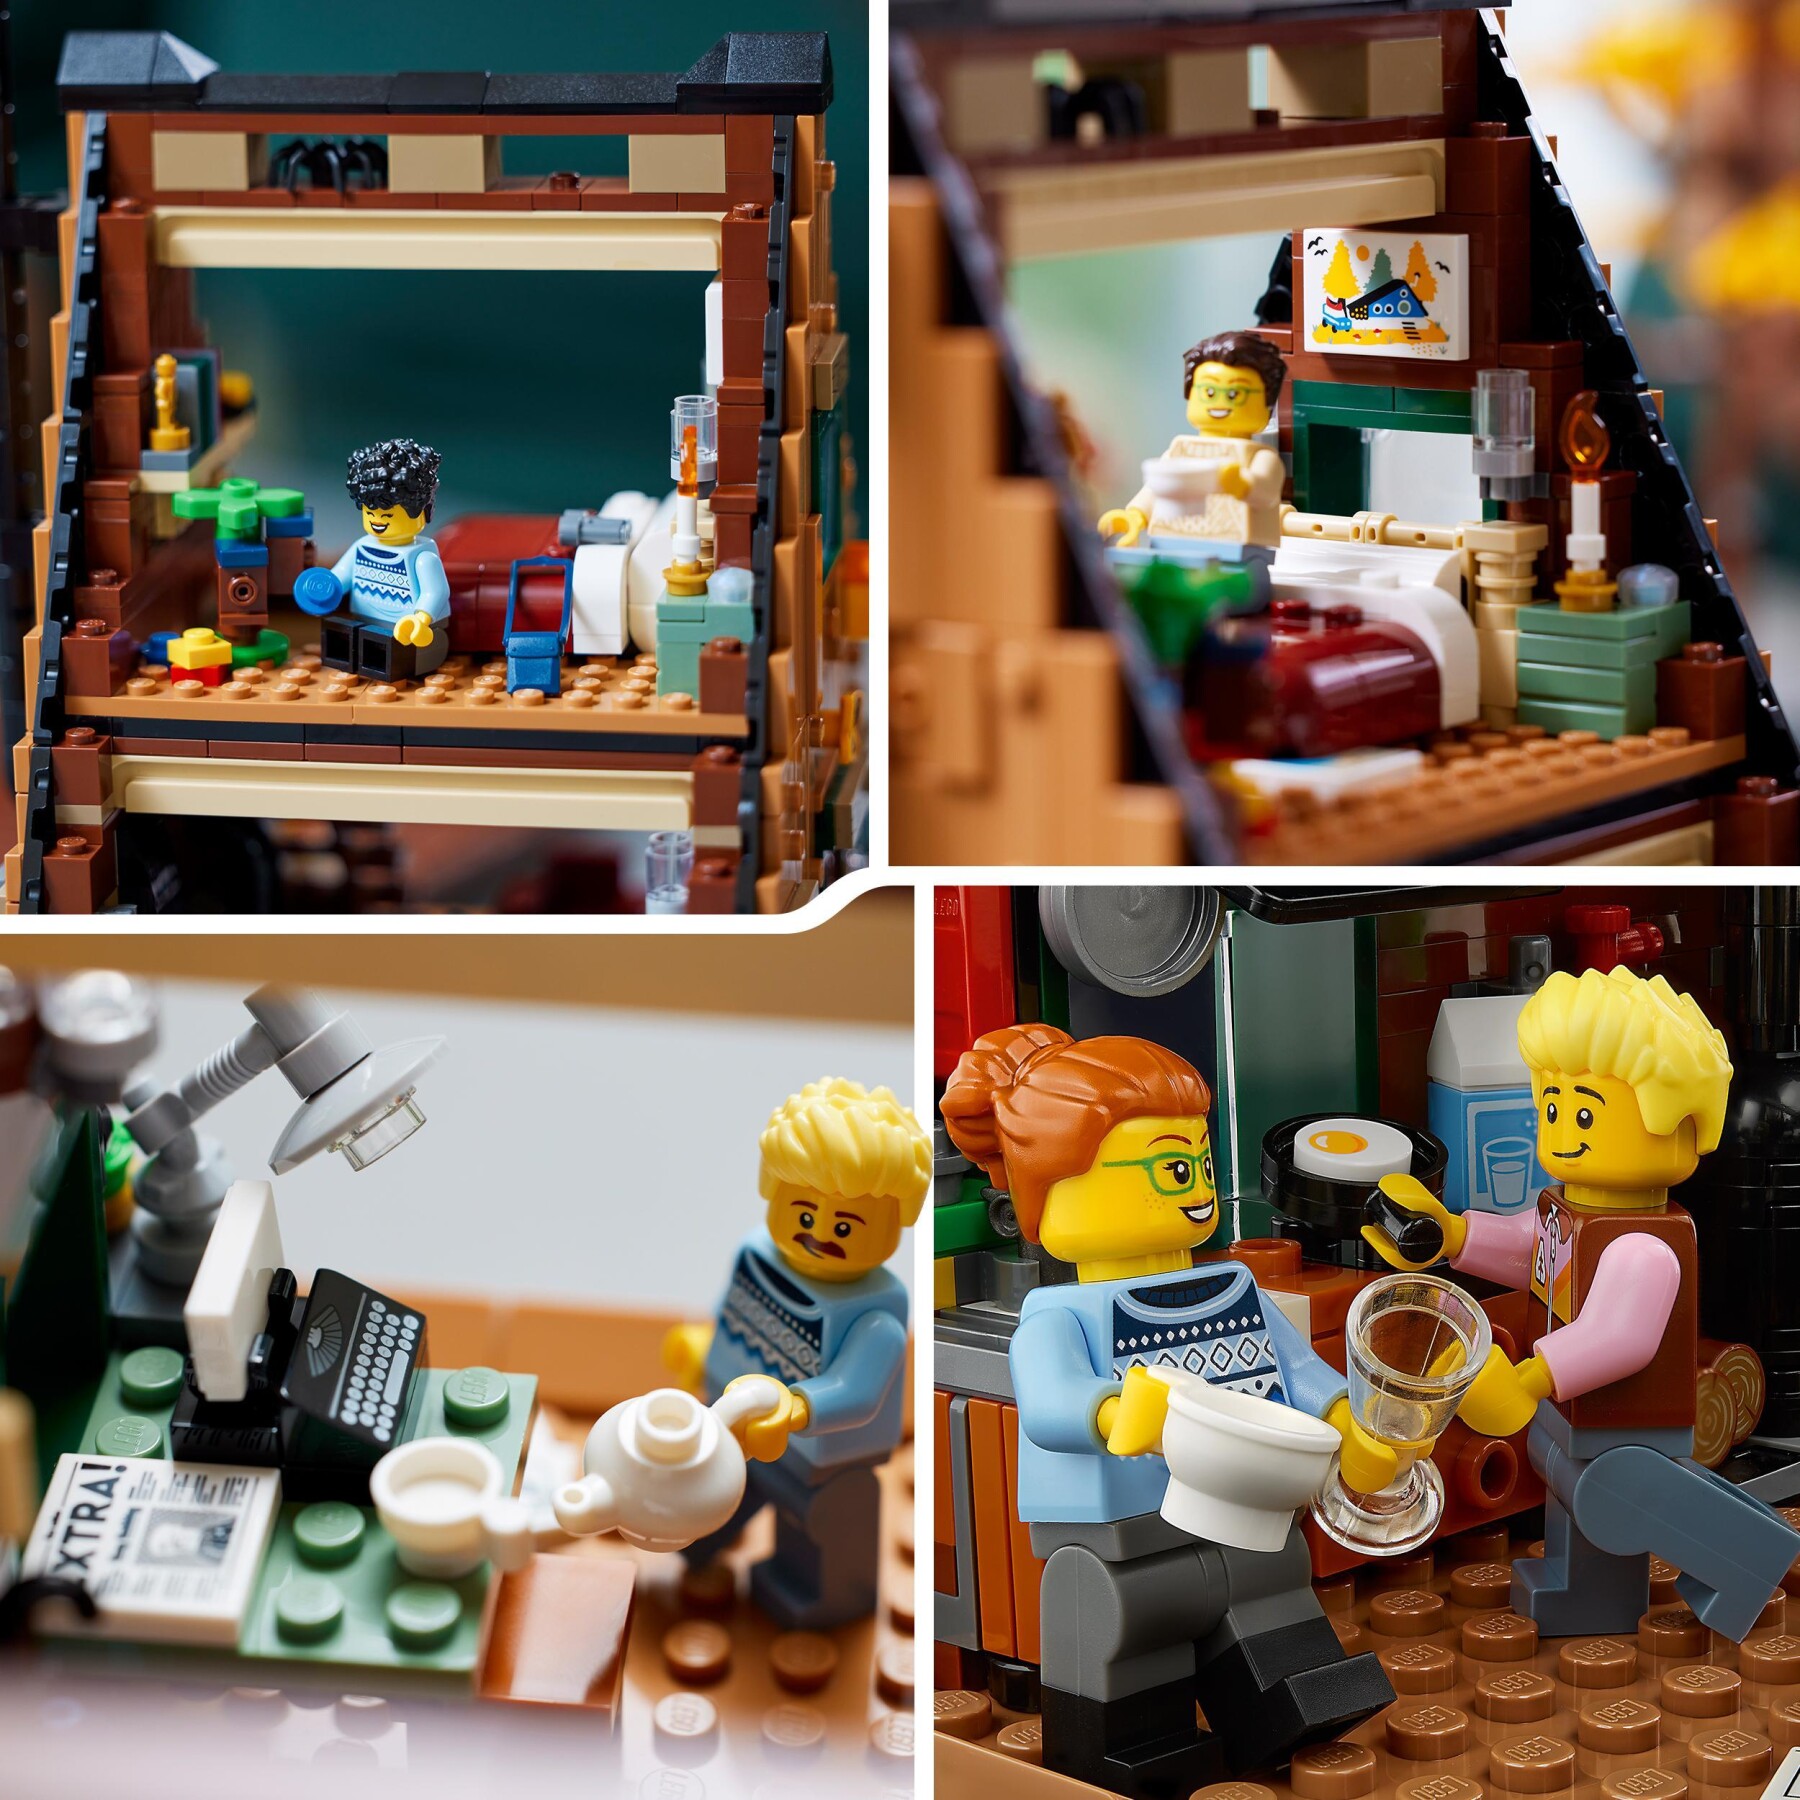 Lego ideas 21338 baita, kit modellino casa da costruire per adulti con 4 minifigure personalizzabili e di animali selvatici - LEGO IDEAS